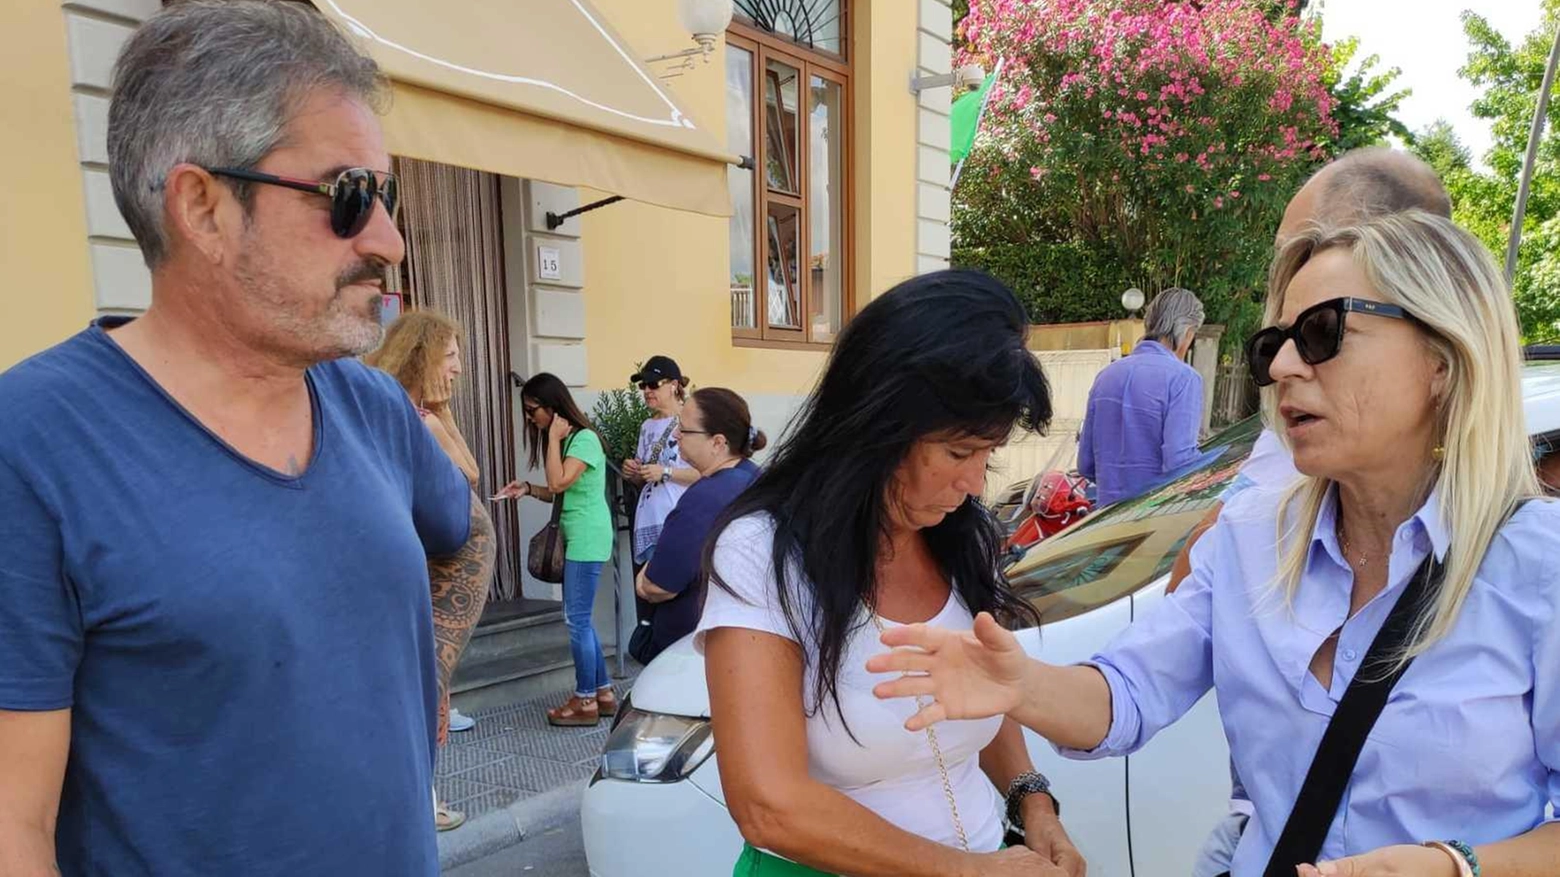 

Aggressione ad Altopascio: Luigi Pulcini sferrato un colpo alla testa